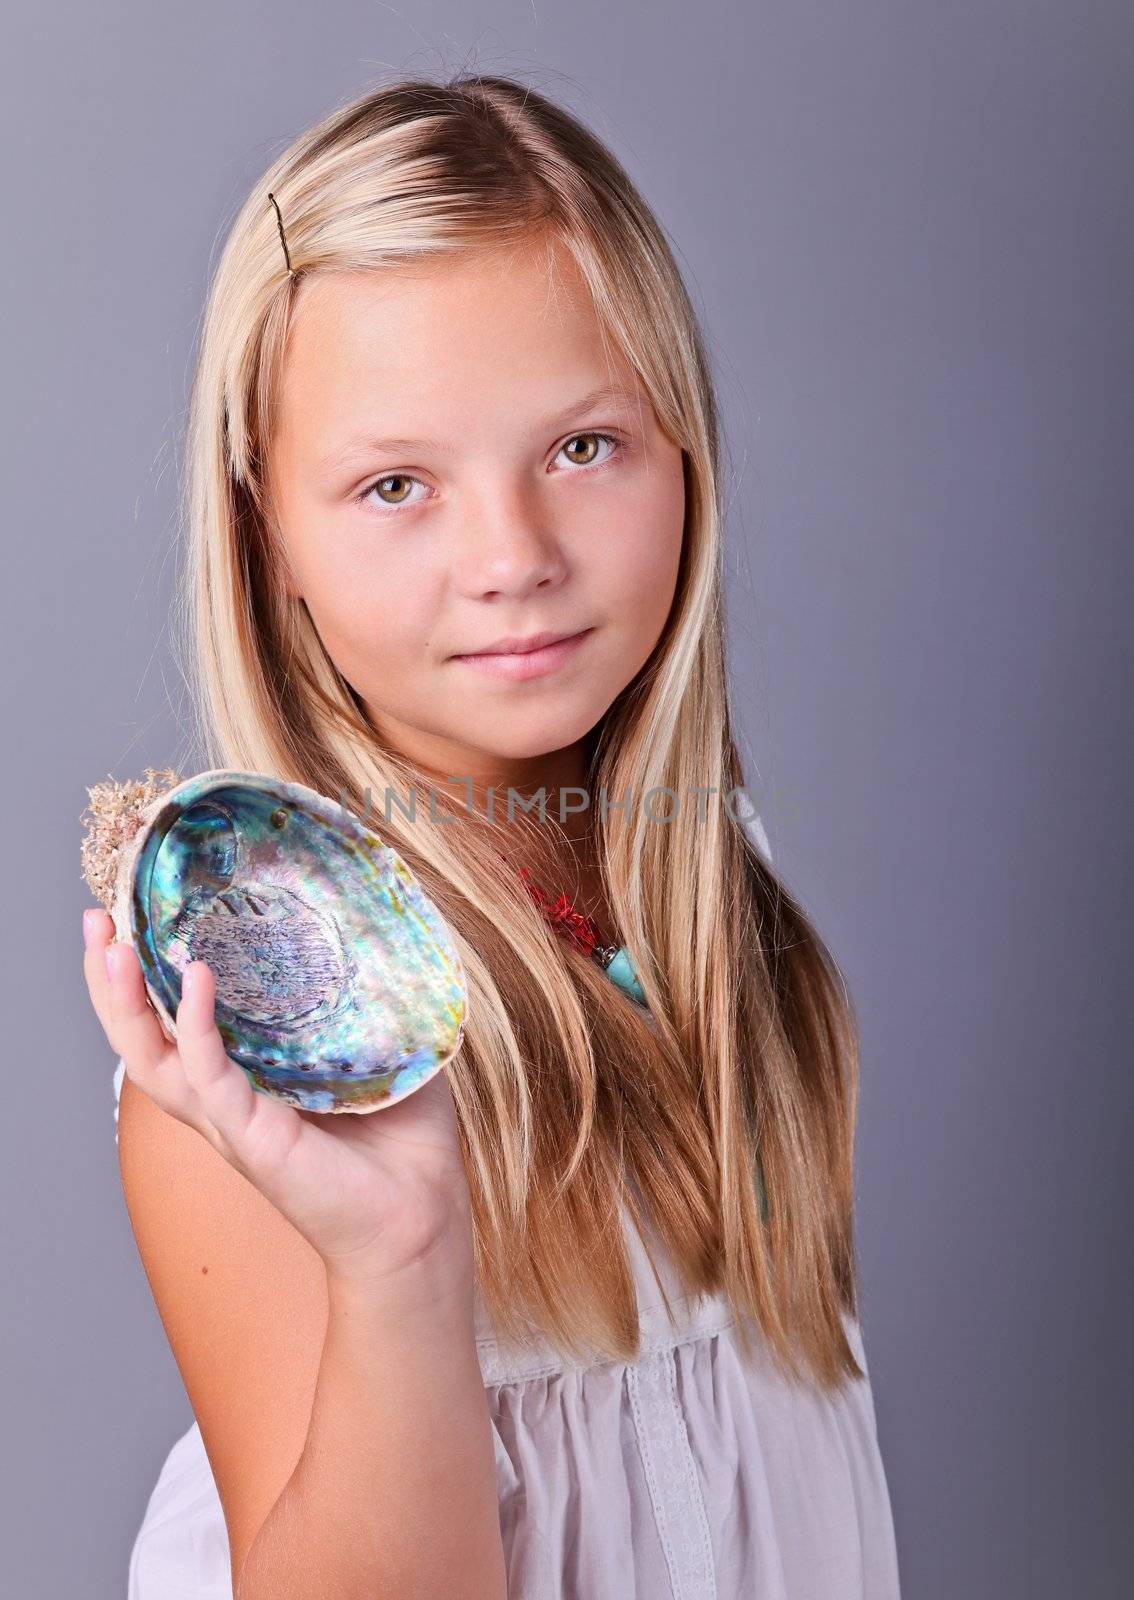 Beautifu young girl holding an open seashell 